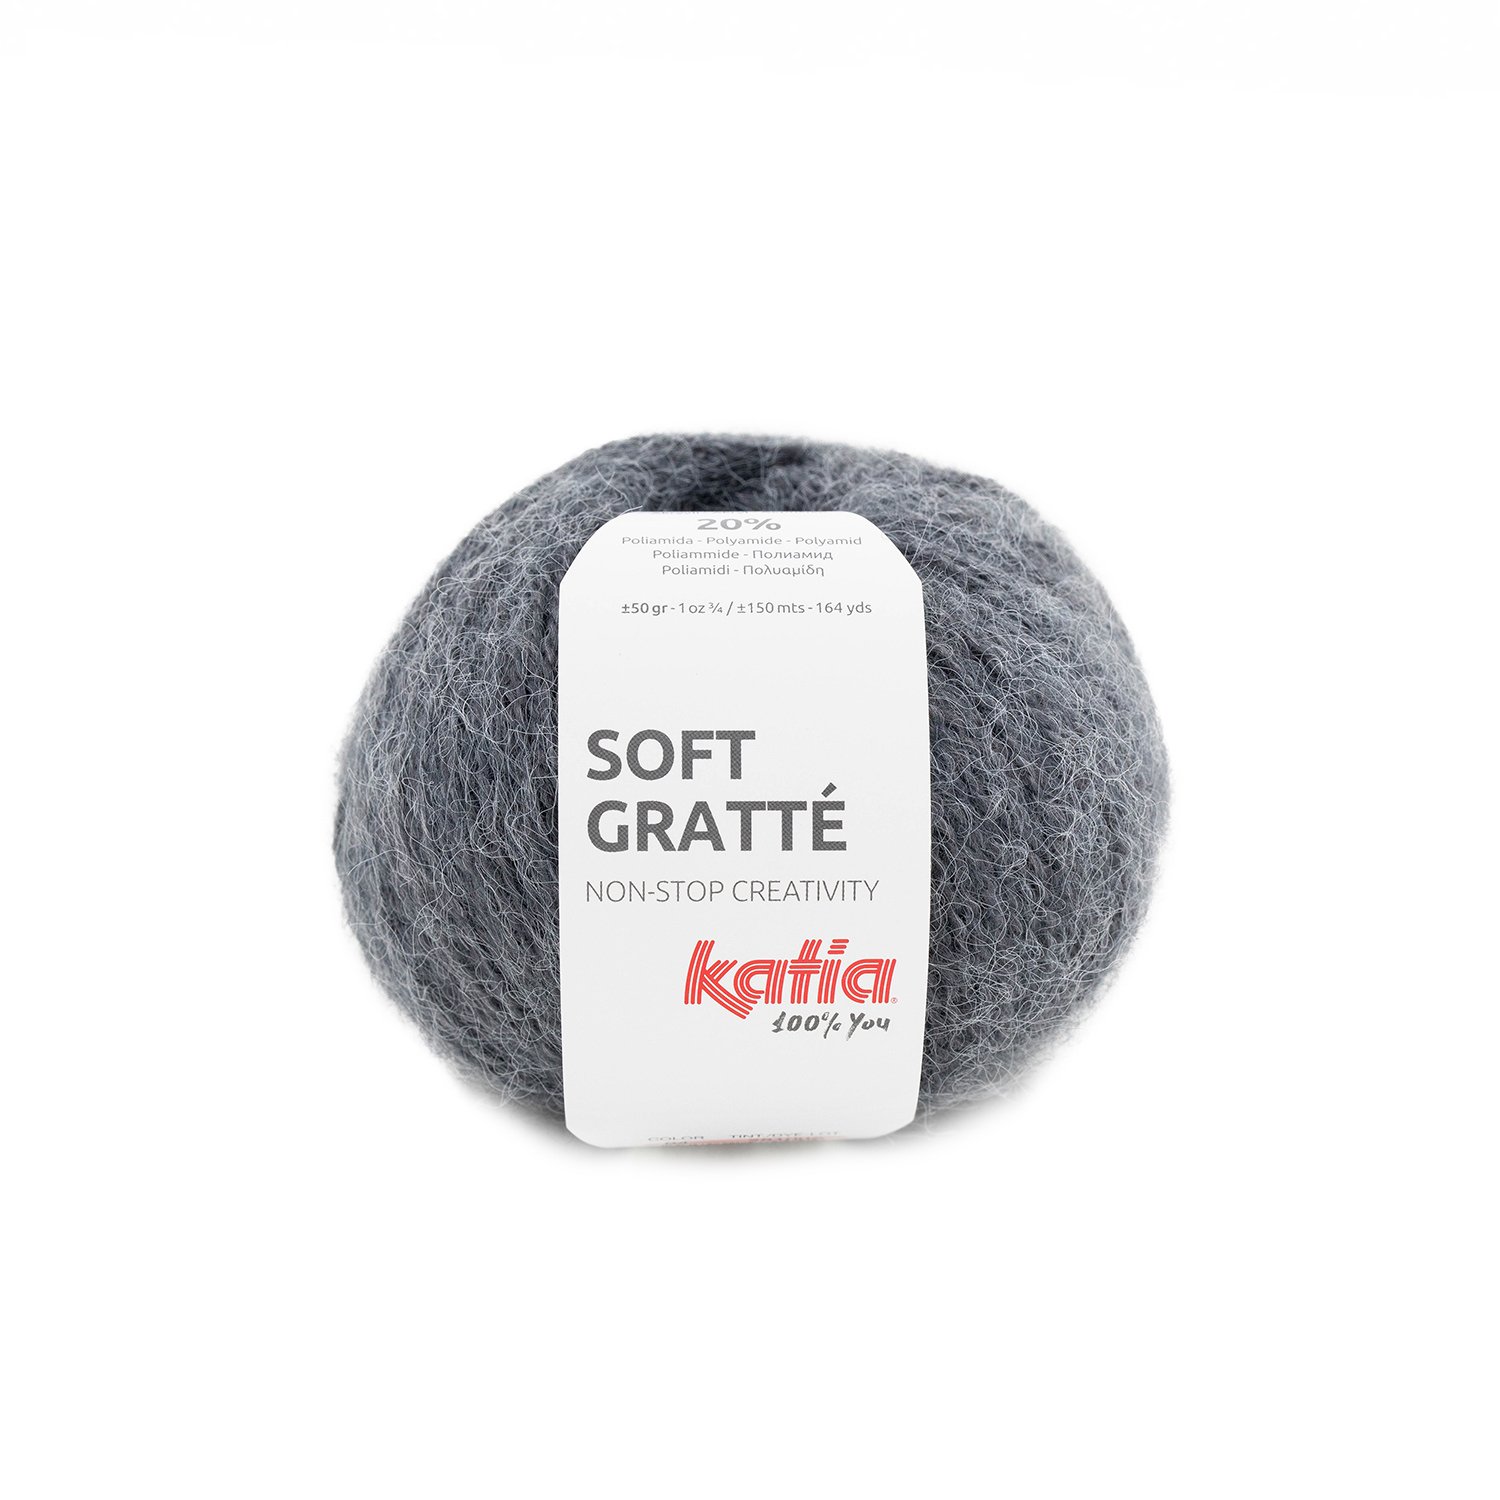 77 laine-fil-softgratte-tricoter-acrylique-polyamide-gris-moyen-automne-hiver-katia-77-fhd